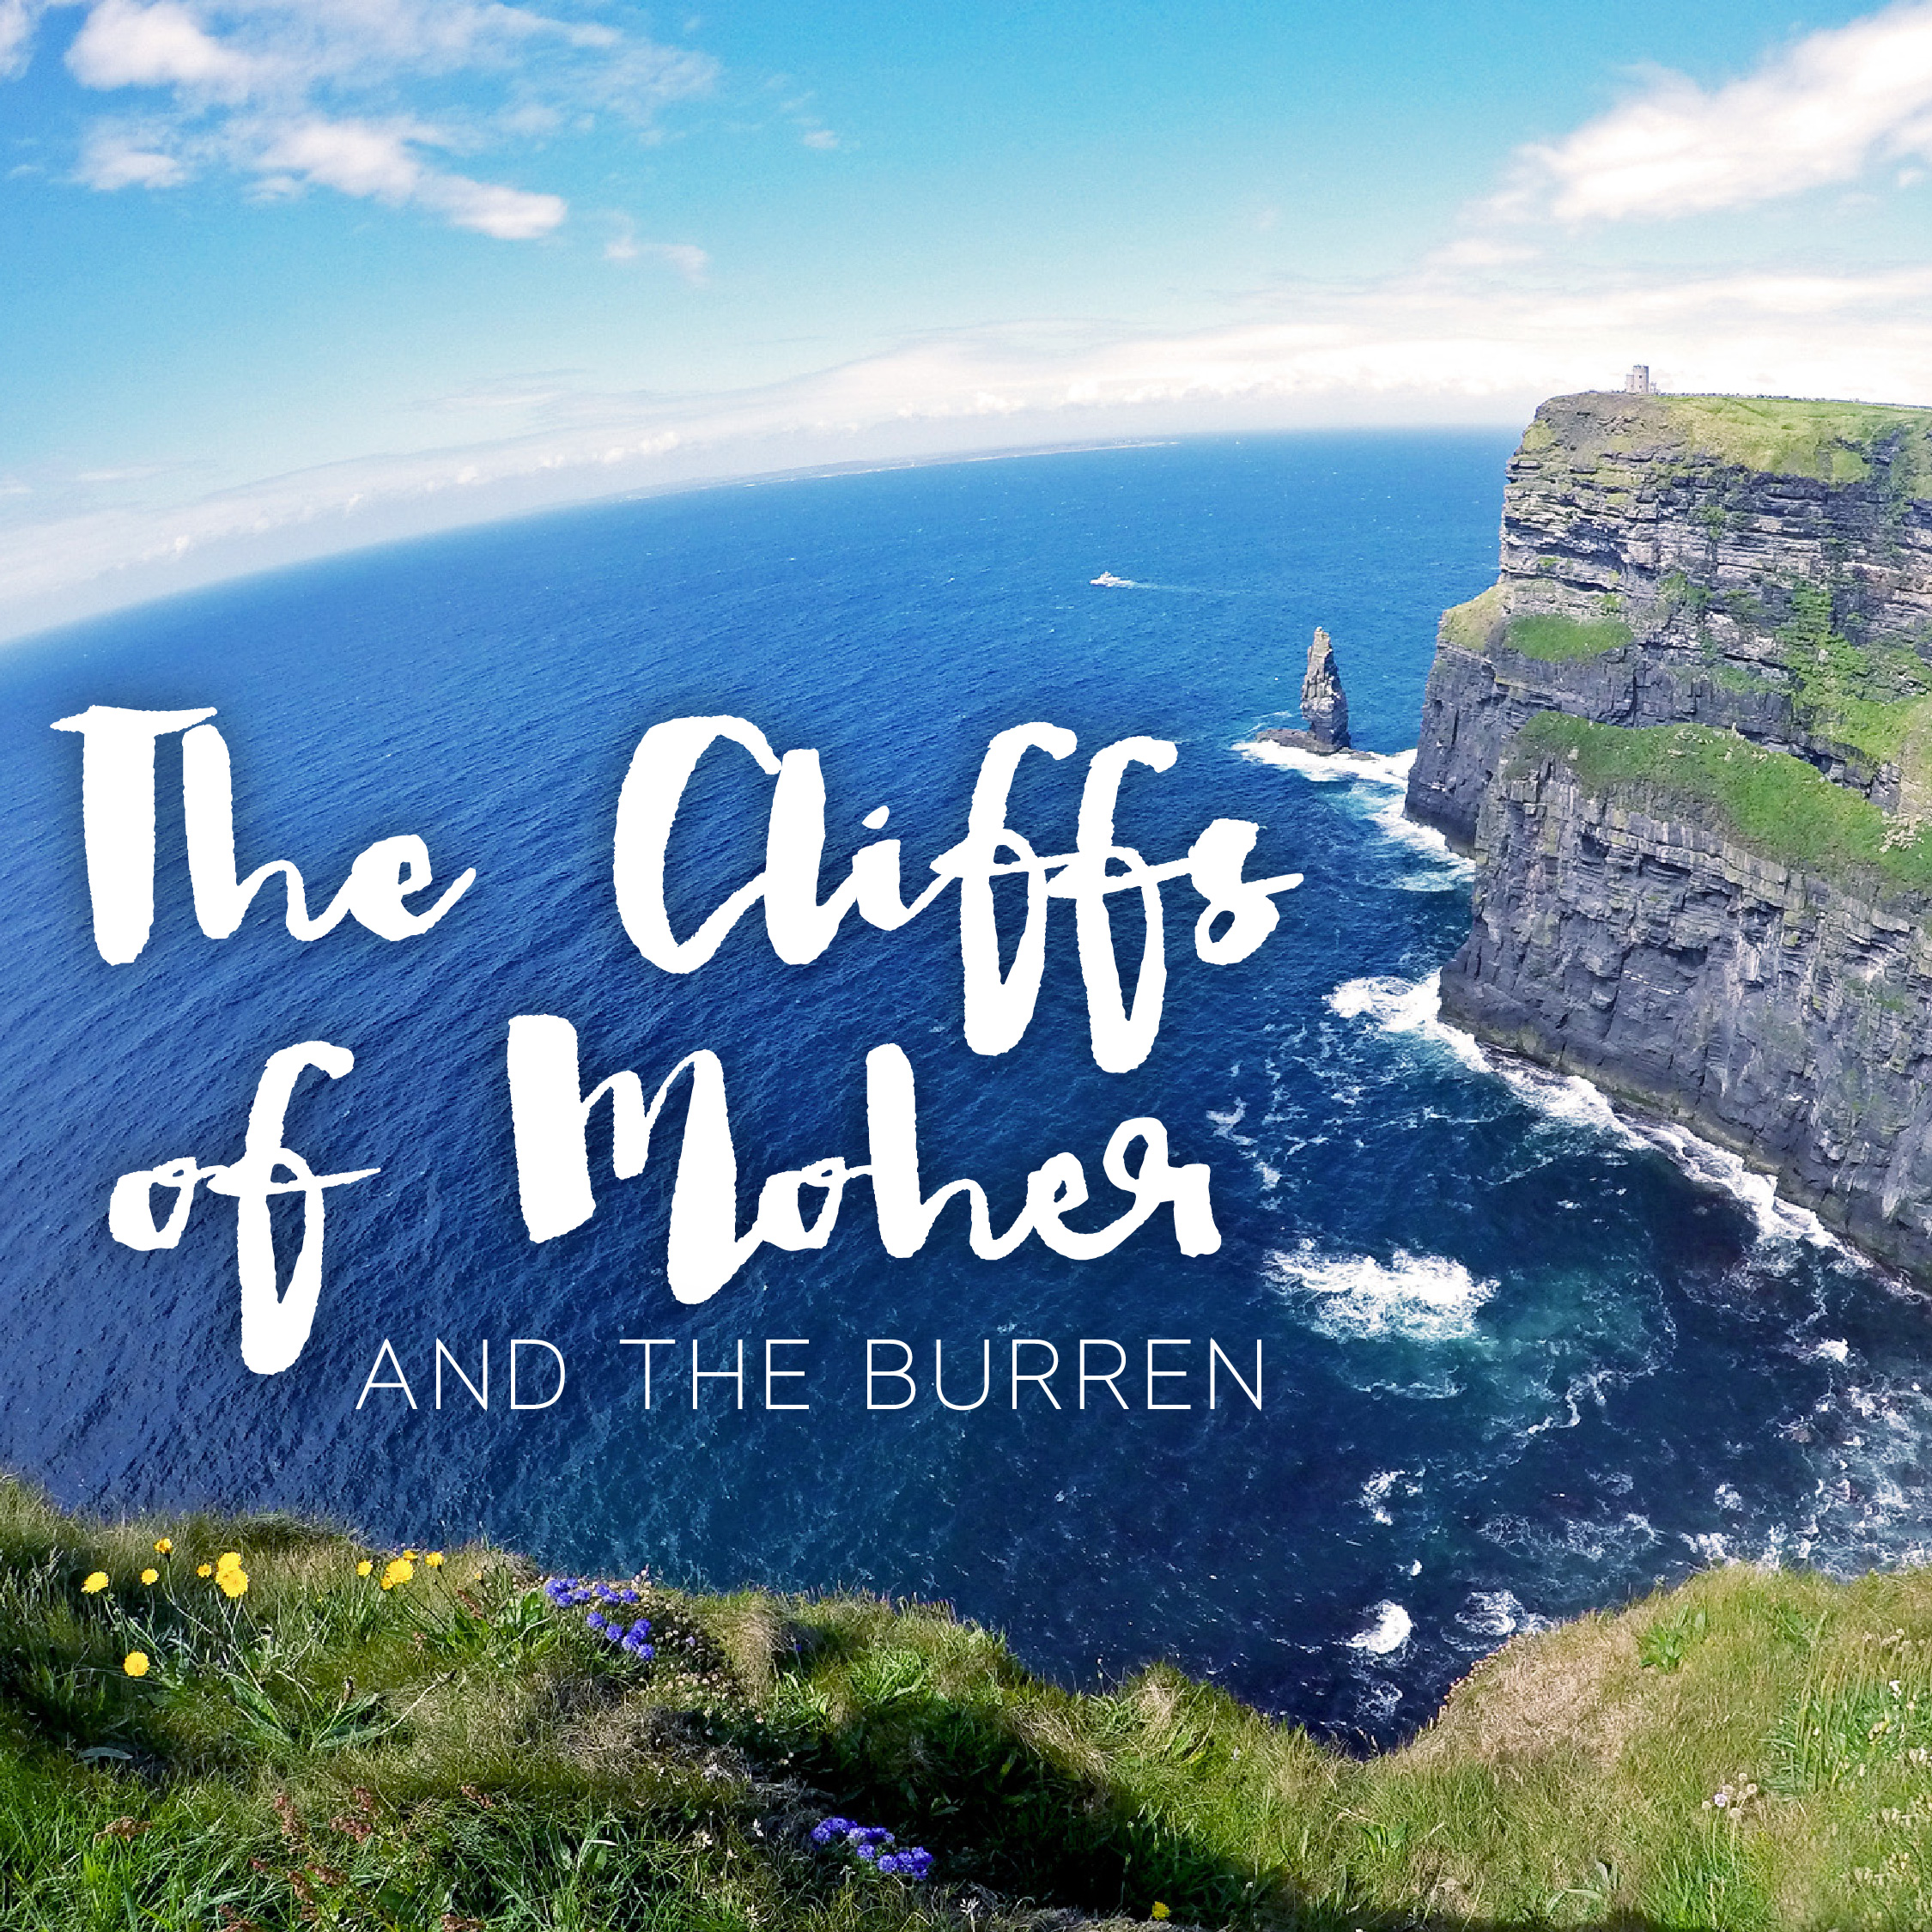 Cliffs of Moher + The Burren Tour